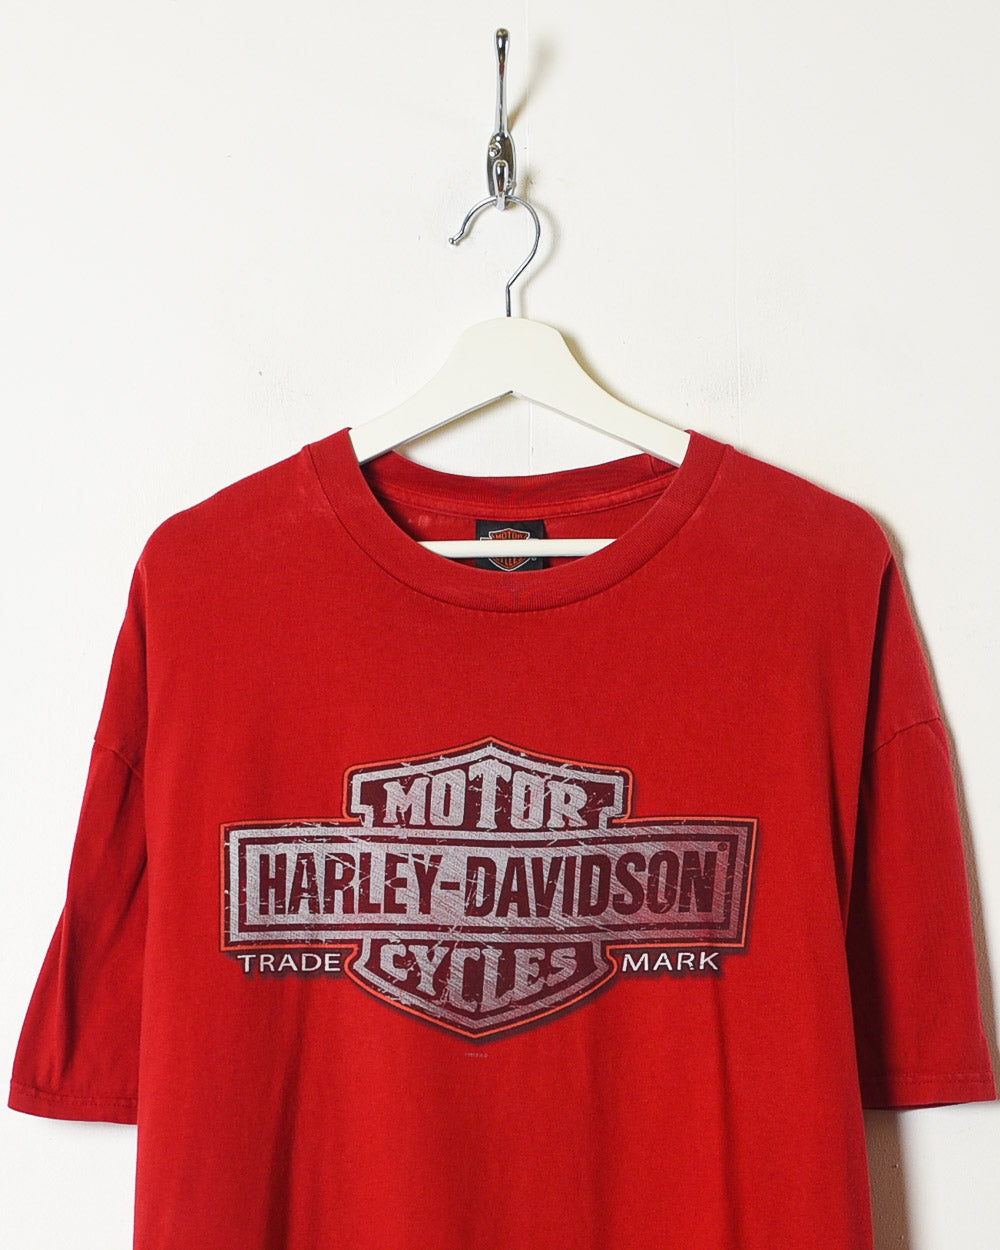 Red Harley Davidson T-Shirt - X-Large